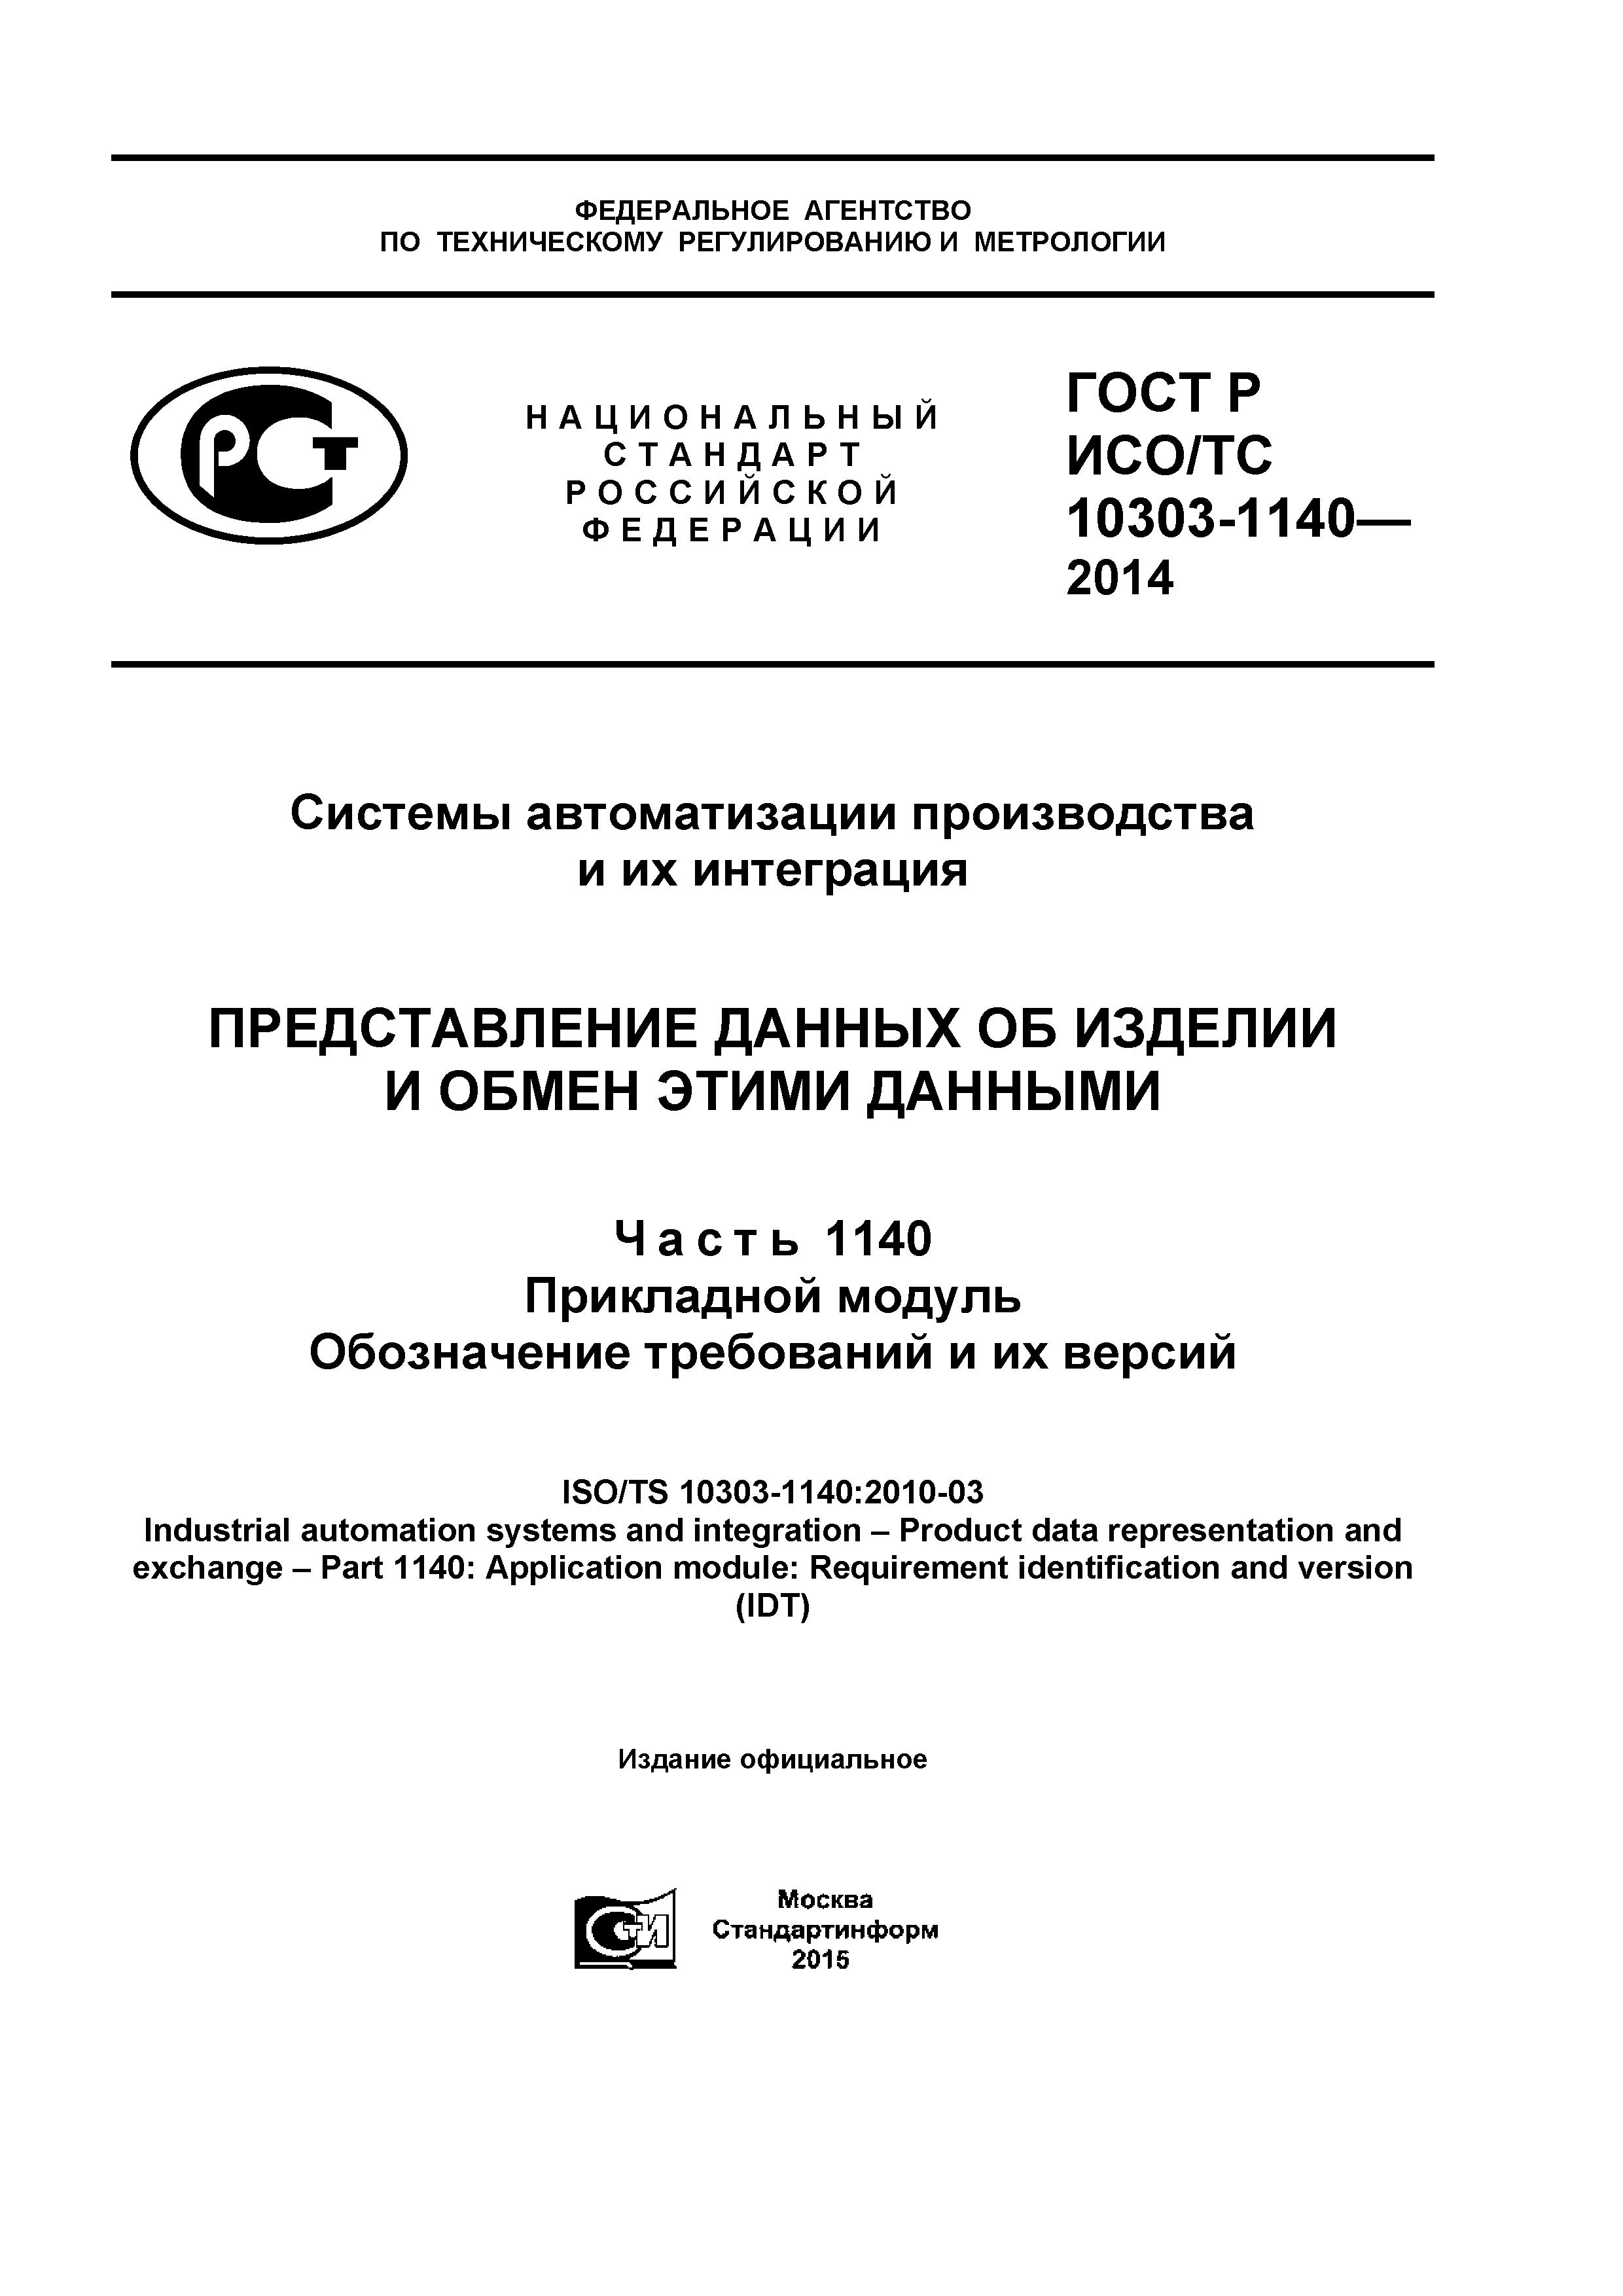 ГОСТ Р ИСО/ТС 10303-1140-2014